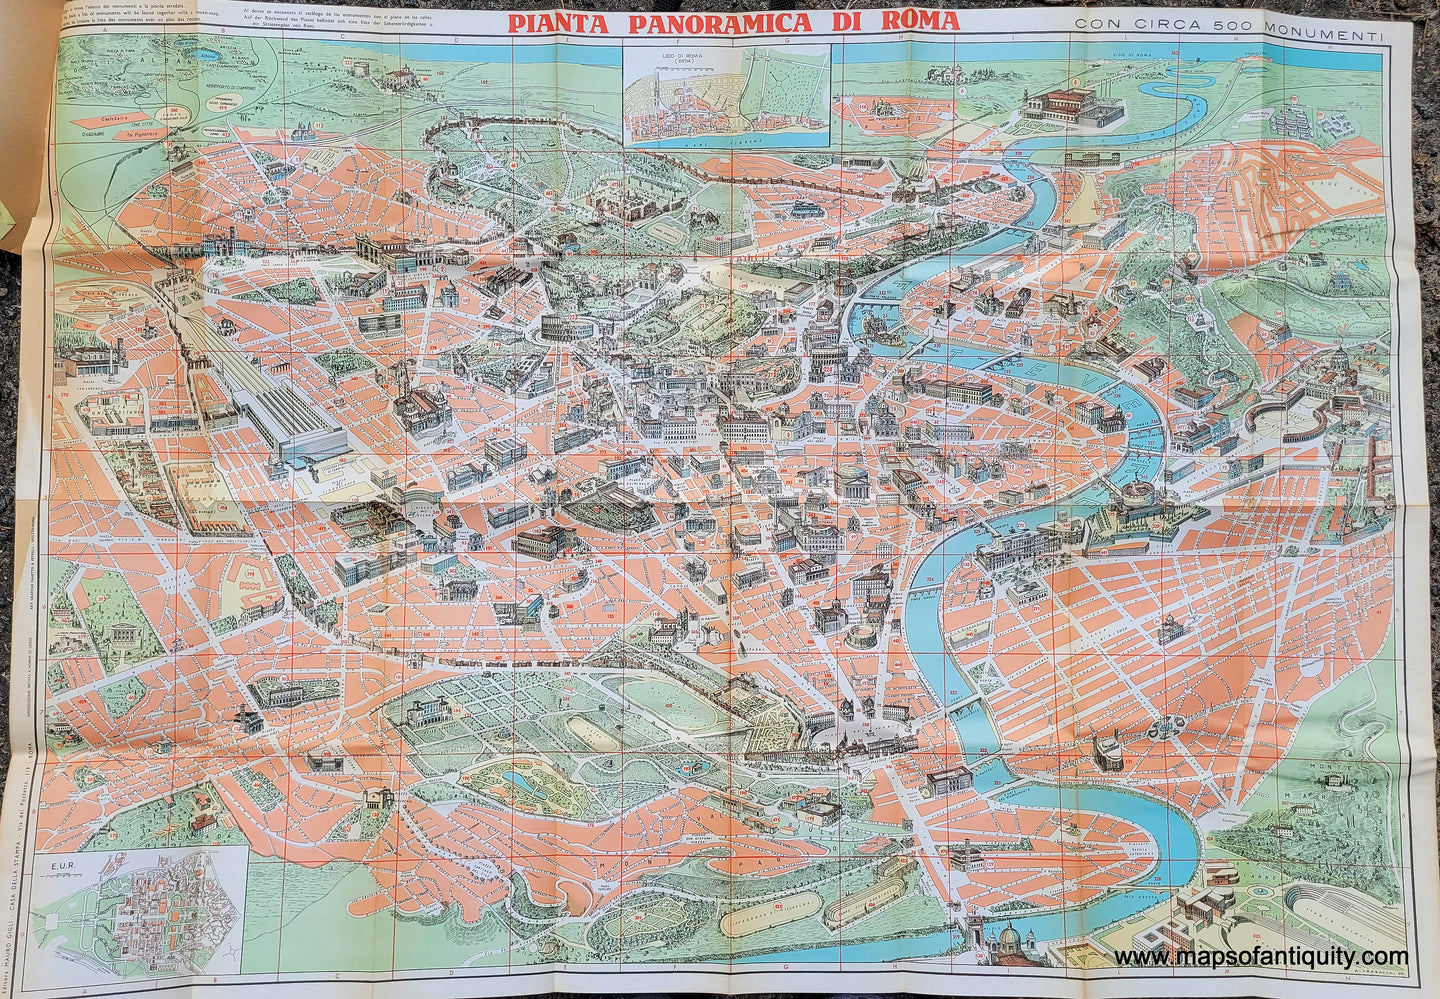 Vintage-Map-Rome-Italy---Pianta-Panoramica-di-Roma-con-circa-500-Monumenti-1960-Augusto-Trabacchi-Maps-Of-Antiquity